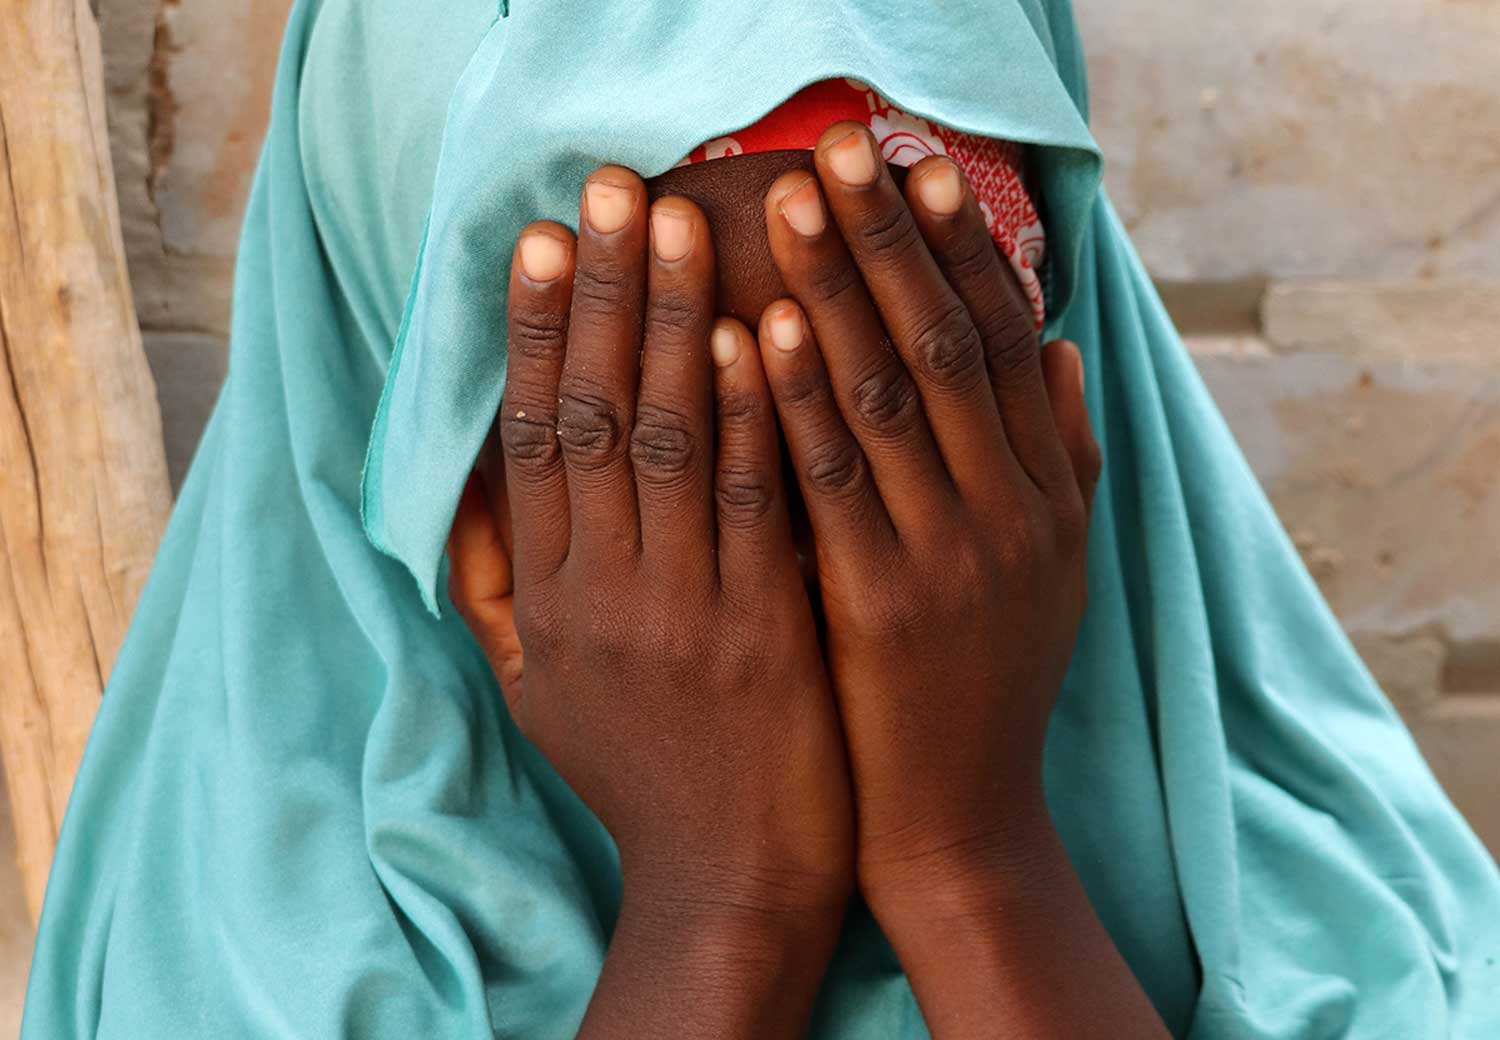 Atou fra Niger gjemmer ansiktet sitt. Hun ble giftet bort da hun bare var 11 år.